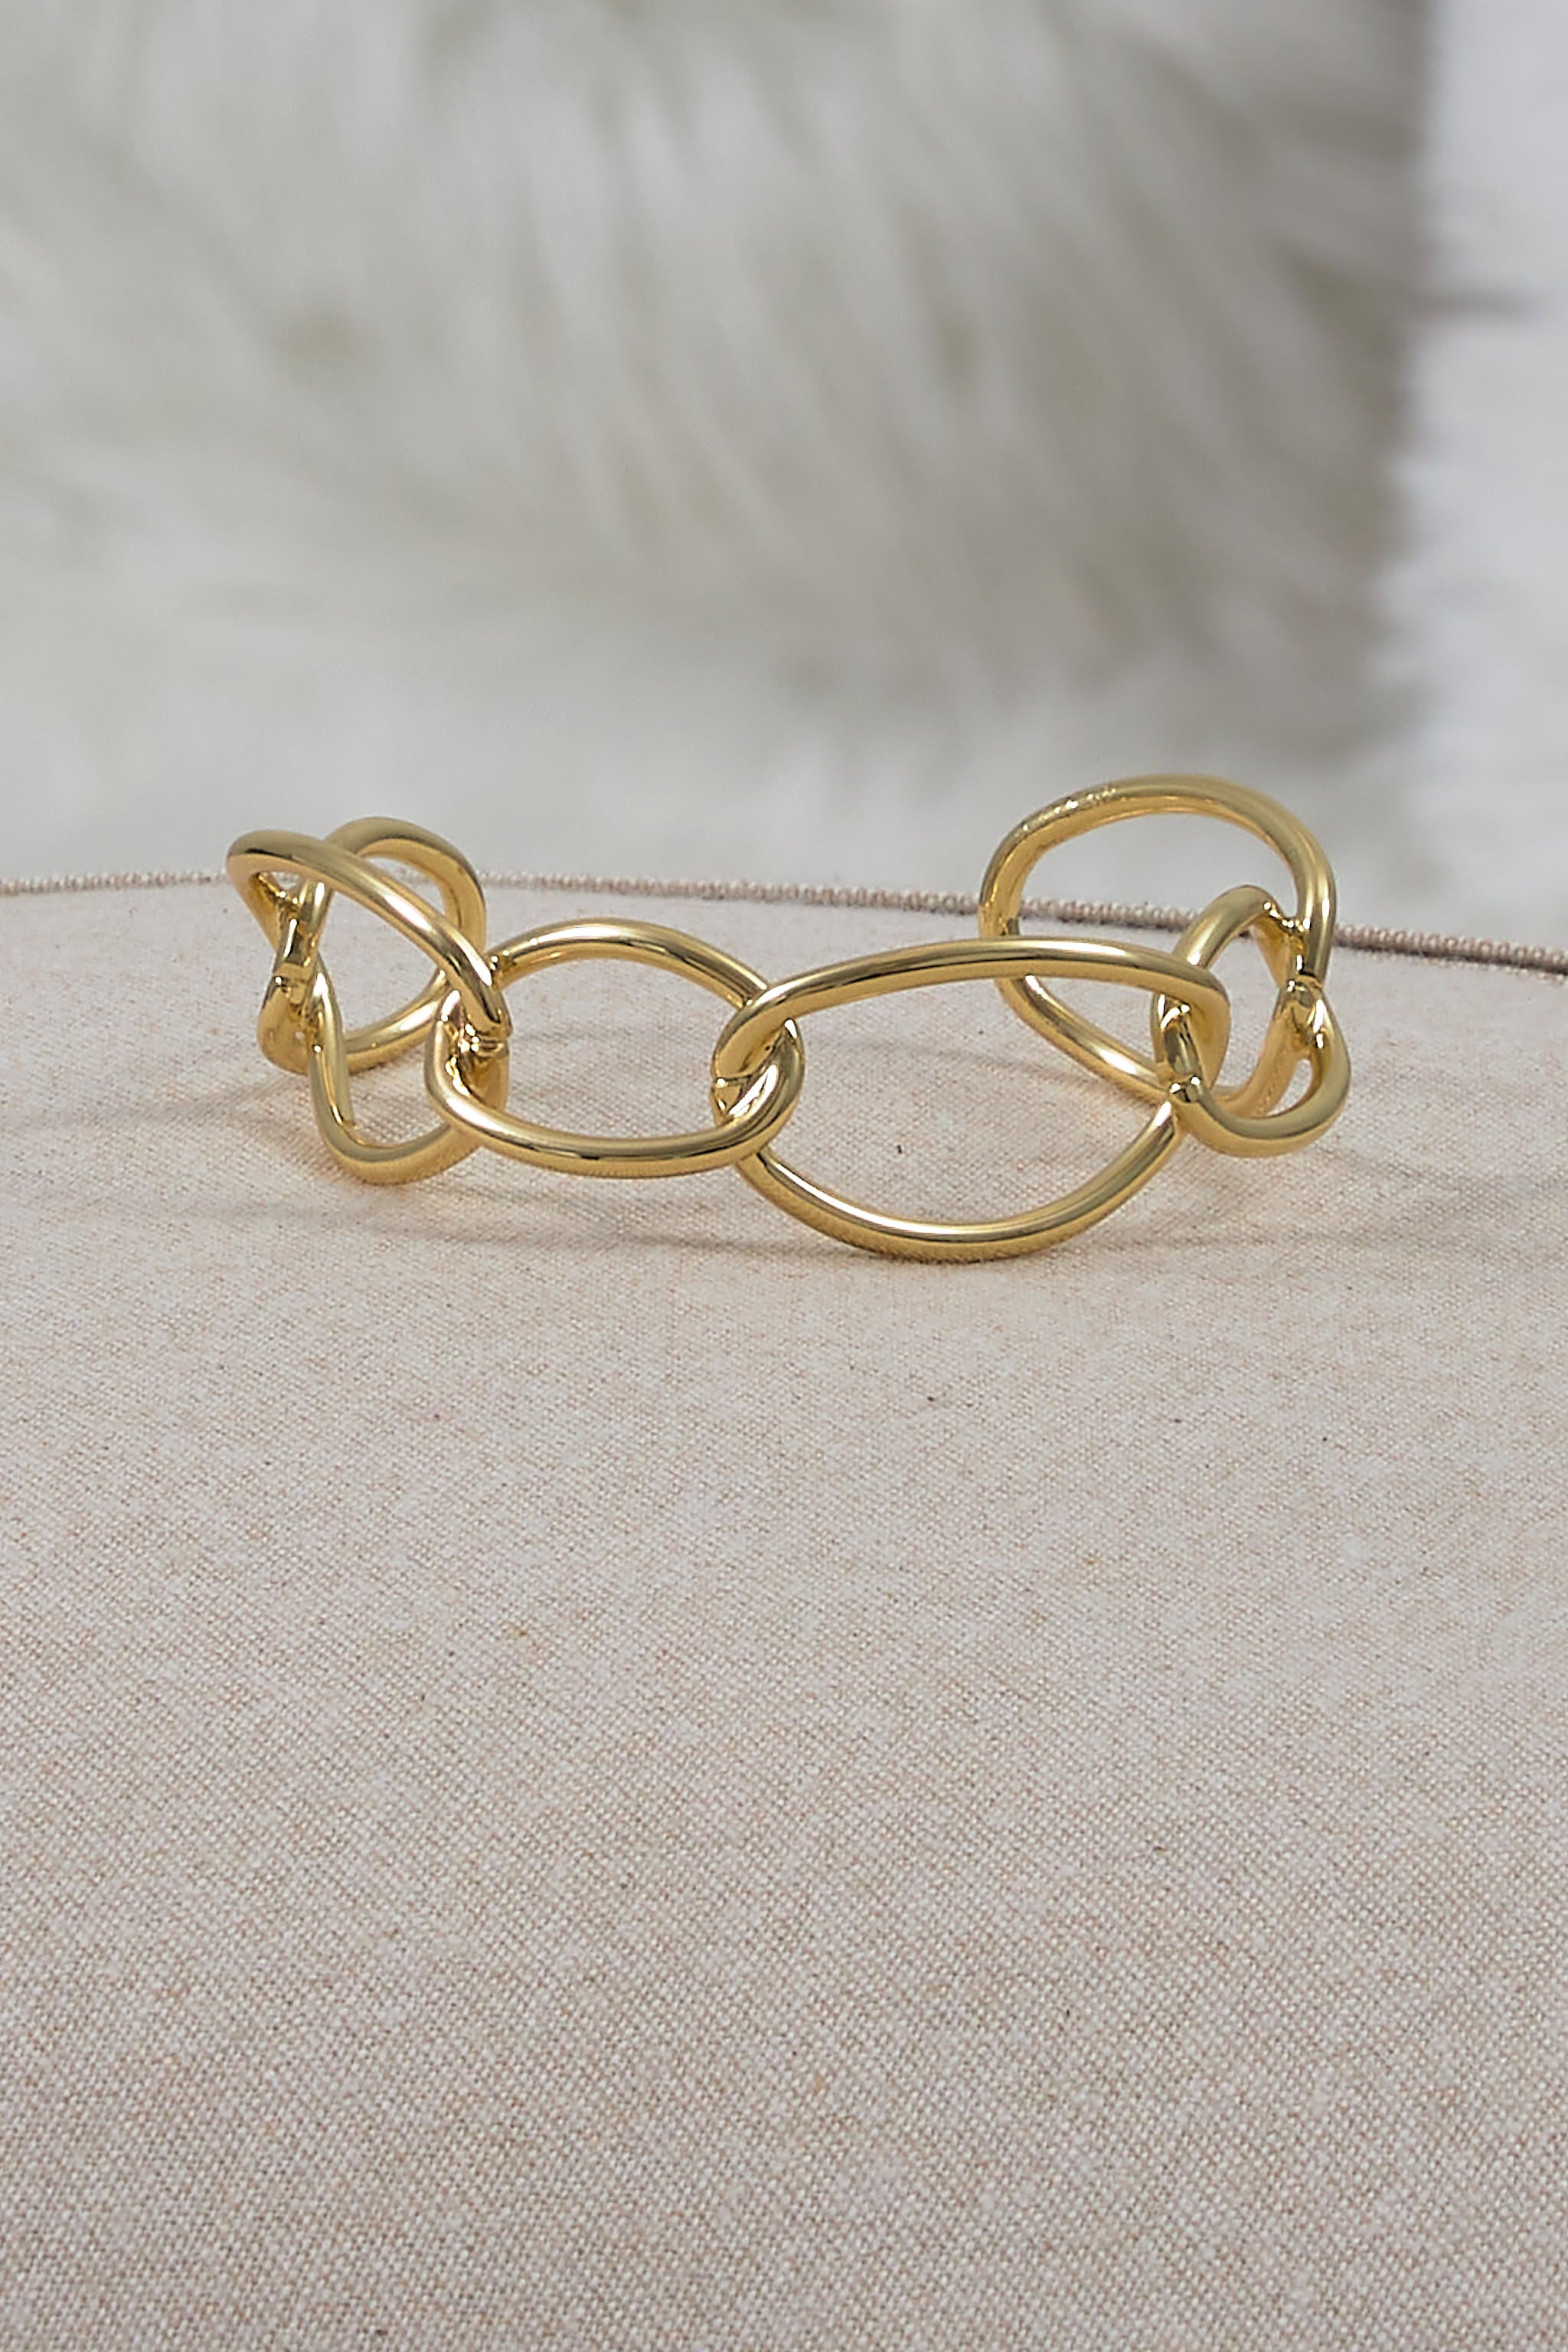 Bracelet made of rings, gold